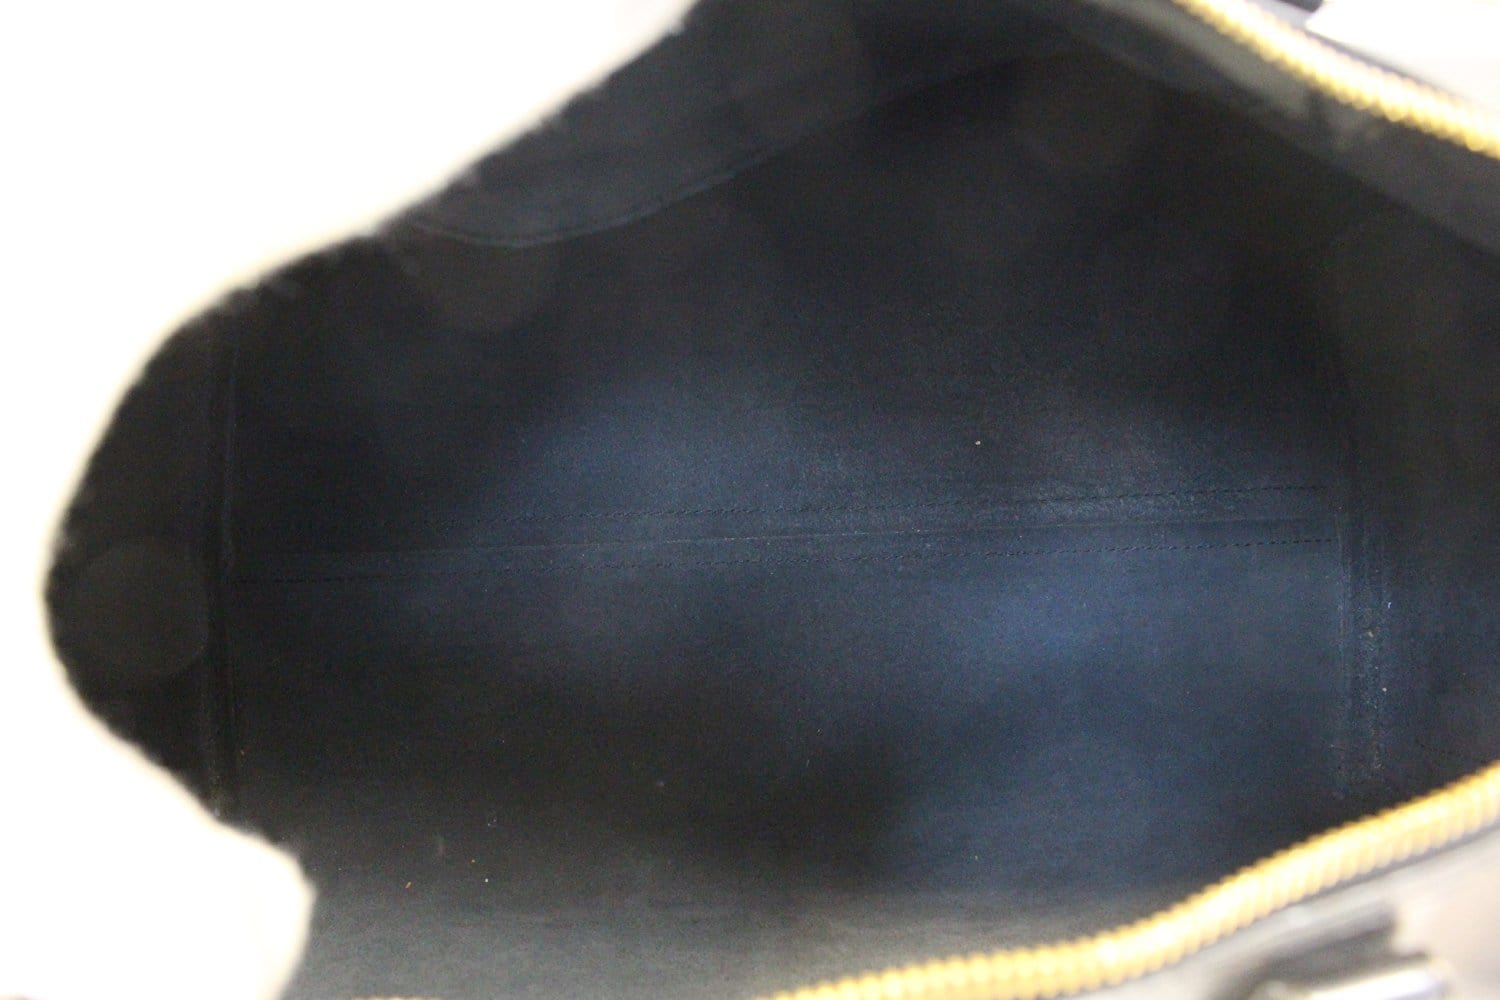 Louis Vuitton - Speedy 40 Epi Leather Noir